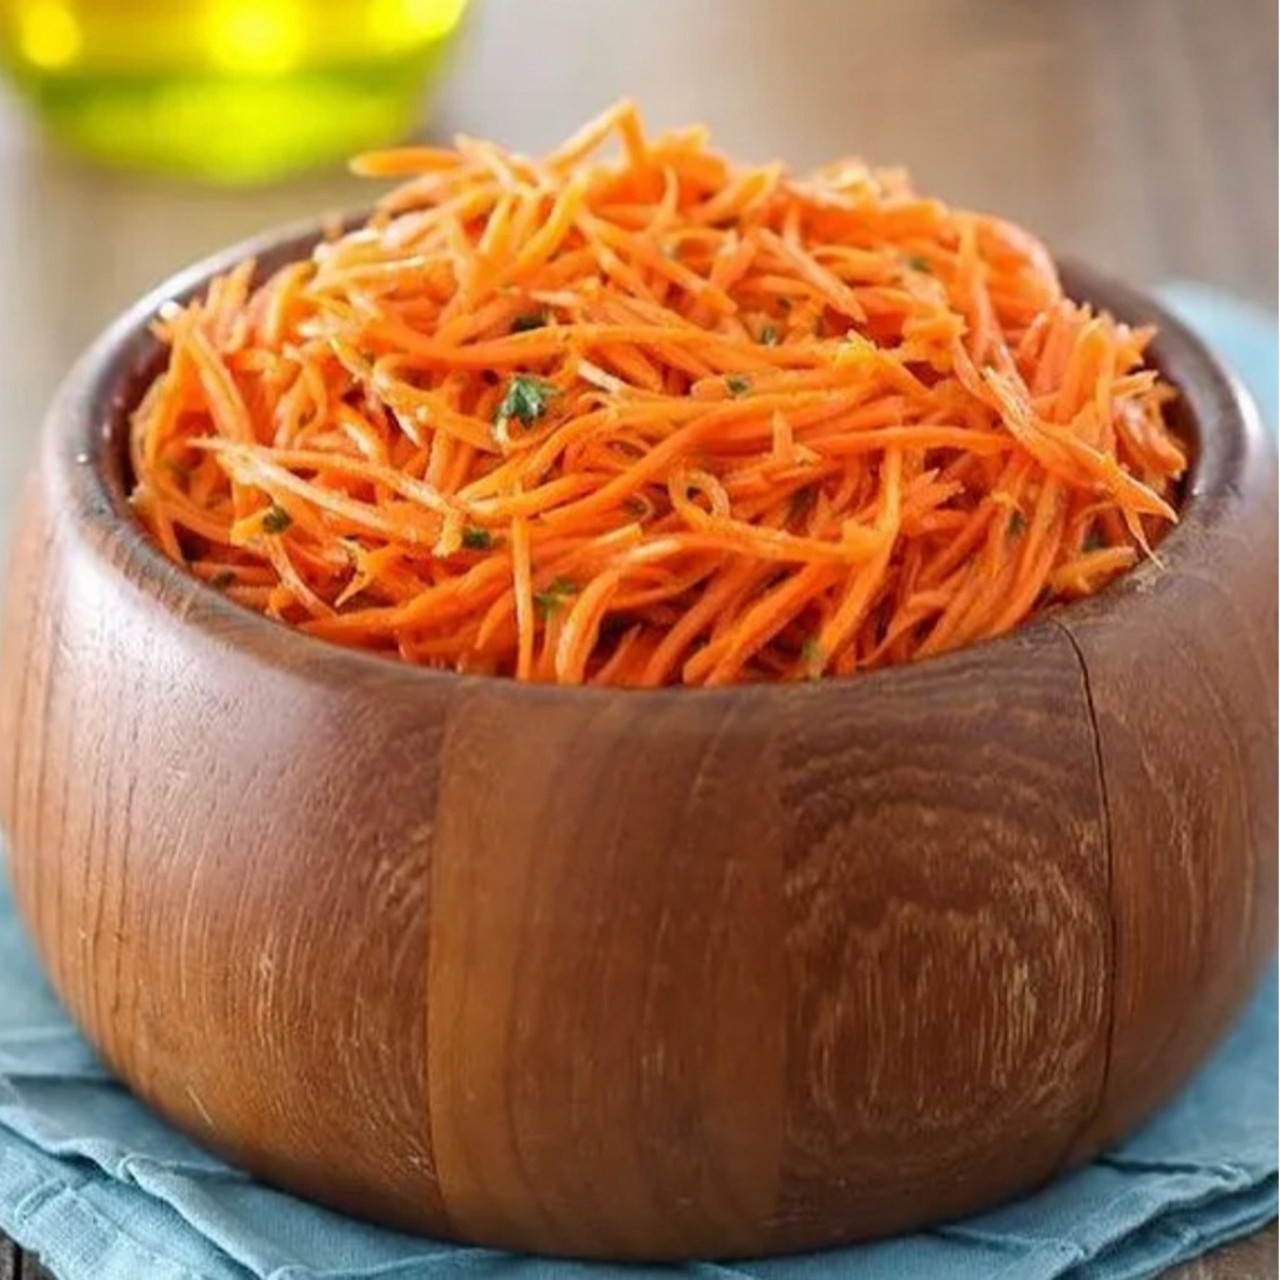 Корейская морковь с картошкой. Морковь по-корейски. Морковь нарезанная. - Морковь по- корейски в бочке. Корейская морковка в банке вкусная.